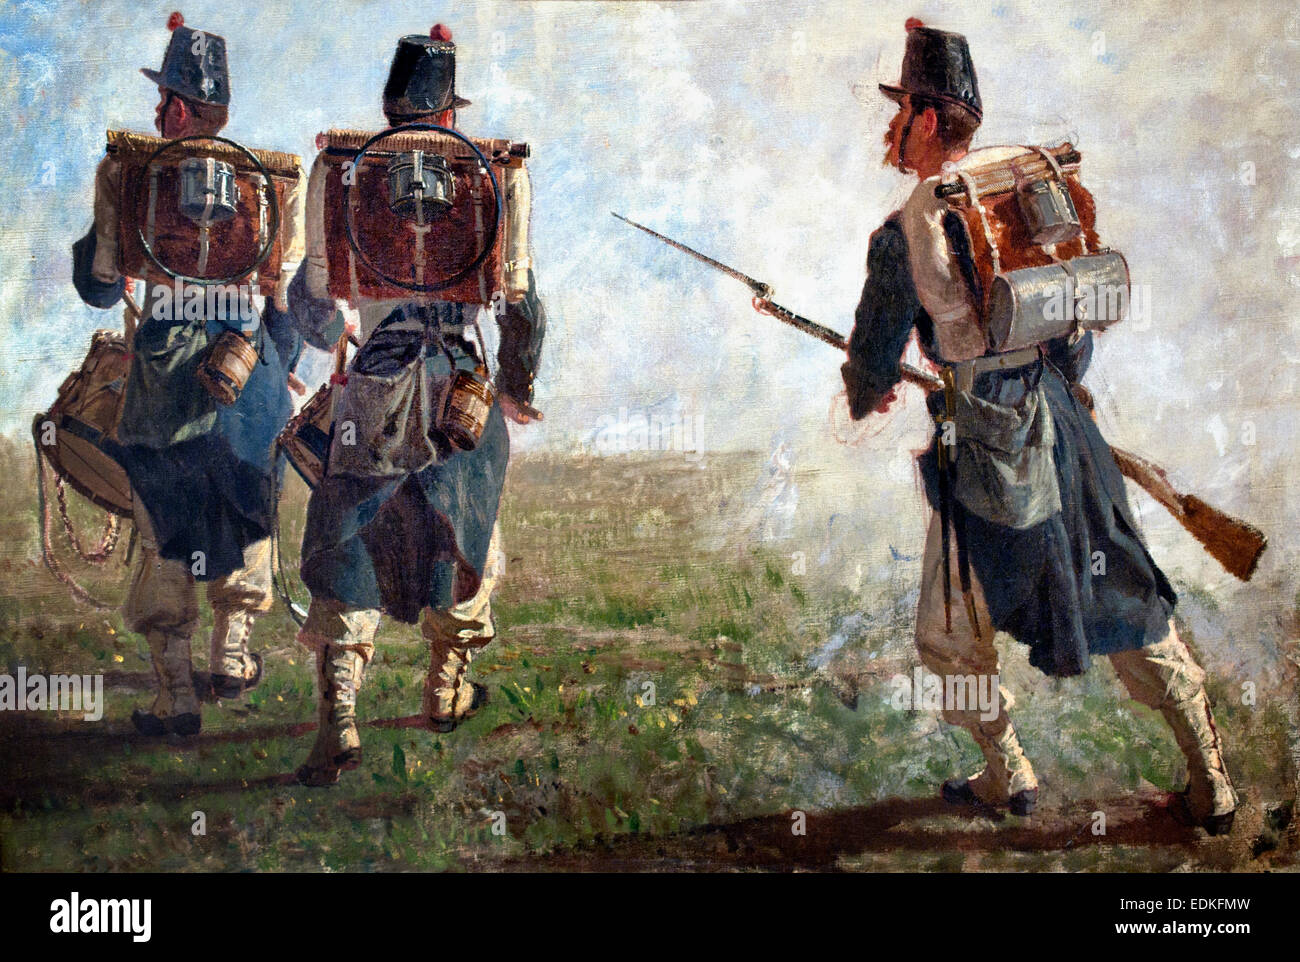 Aufgrund Tamburini e un Luciano Soldato - Granatieri 1867 zwei Trommler und ein Soldat - Grenadiere von Filippo Palizzi (1818 – 1899) Italien Italienisch Stockfoto